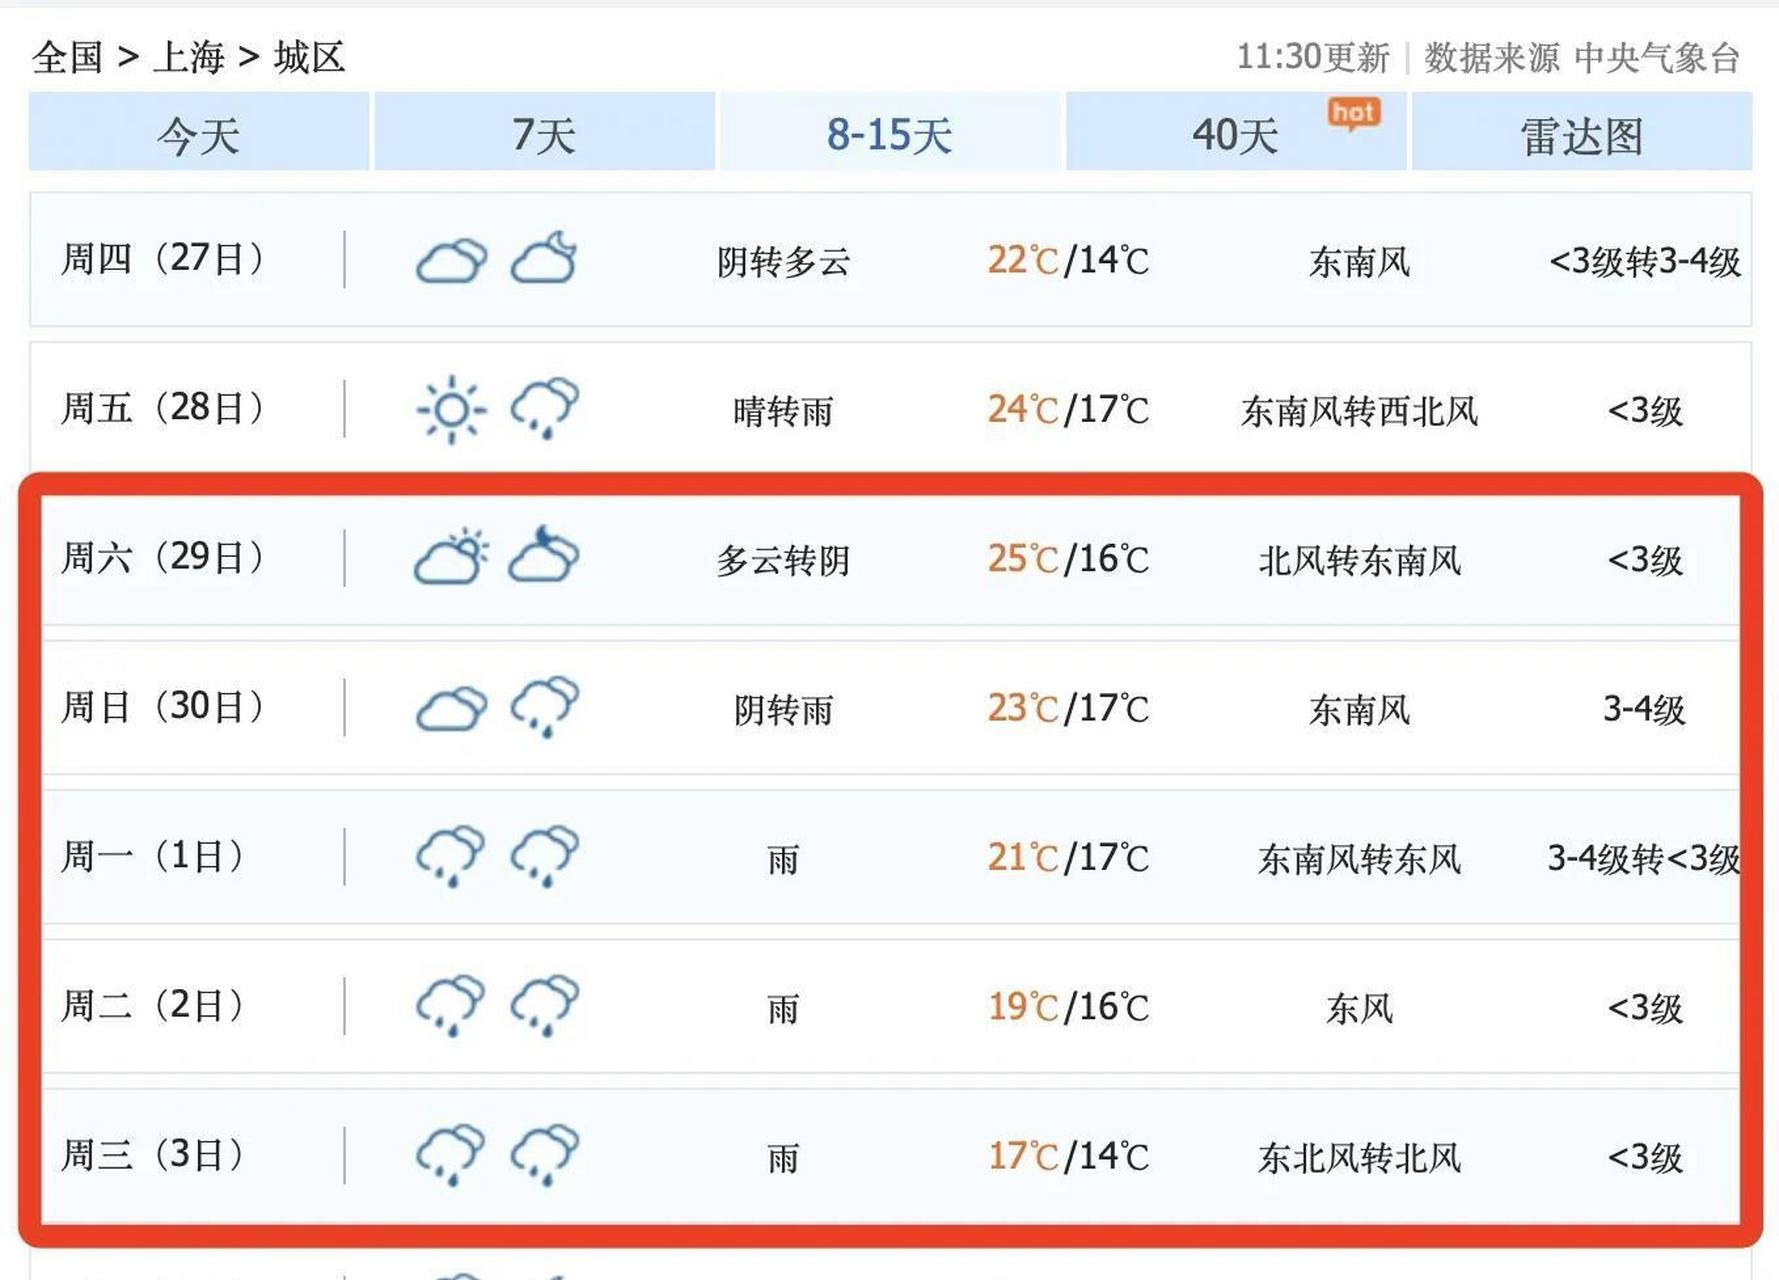 上海天气预报30天查询图片